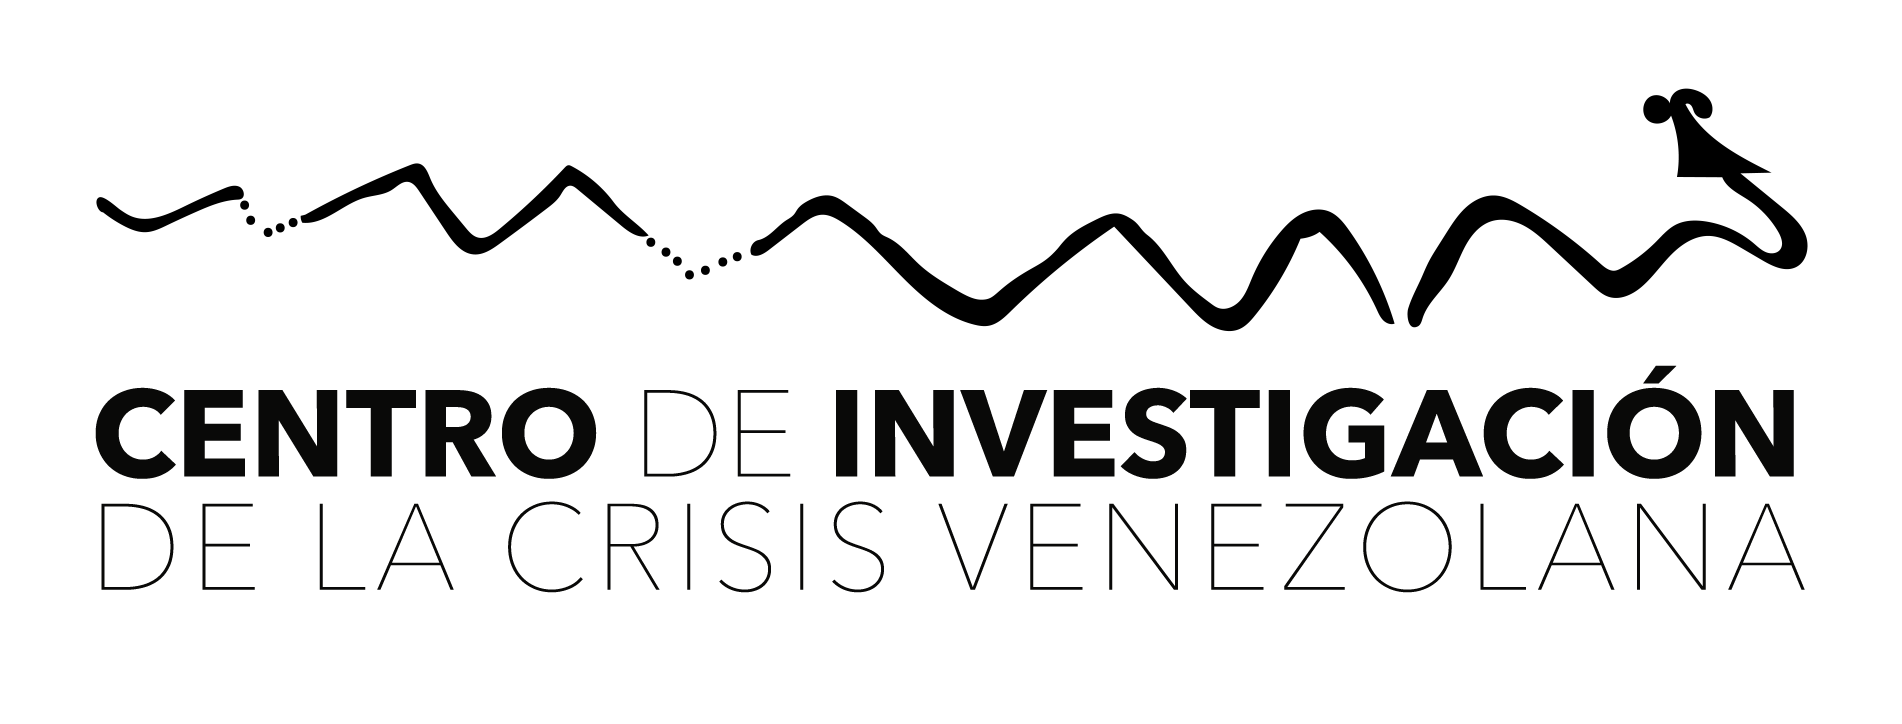 Investiga Venezuela Logo